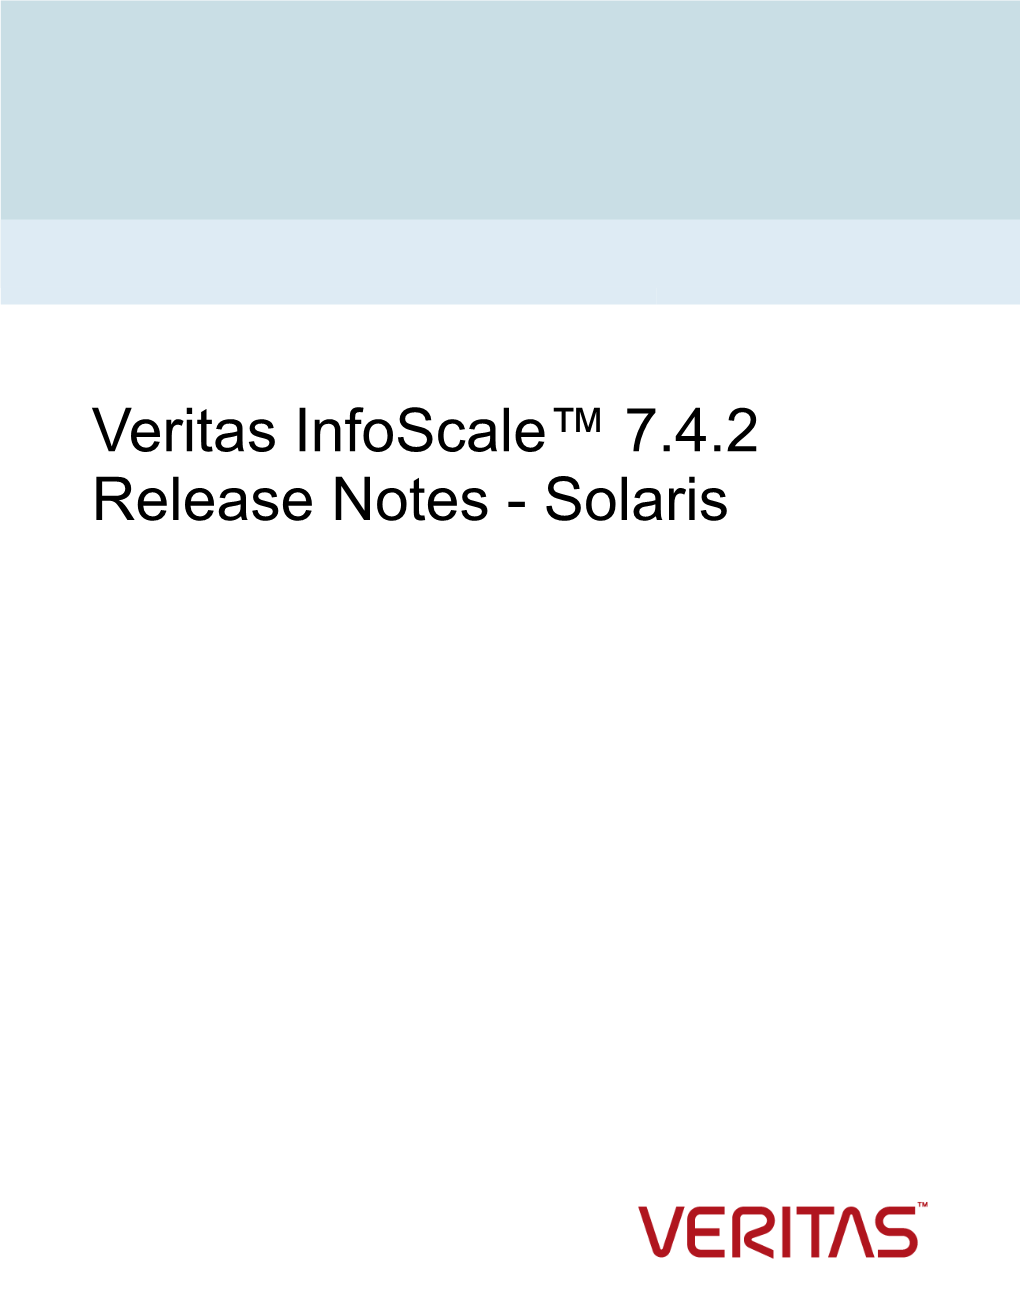 Veritas Infoscale™ 7.4.2 Release Notes - Solaris Last Updated: 2020-07-06 Legal Notice Copyright © 2020 Veritas Technologies LLC